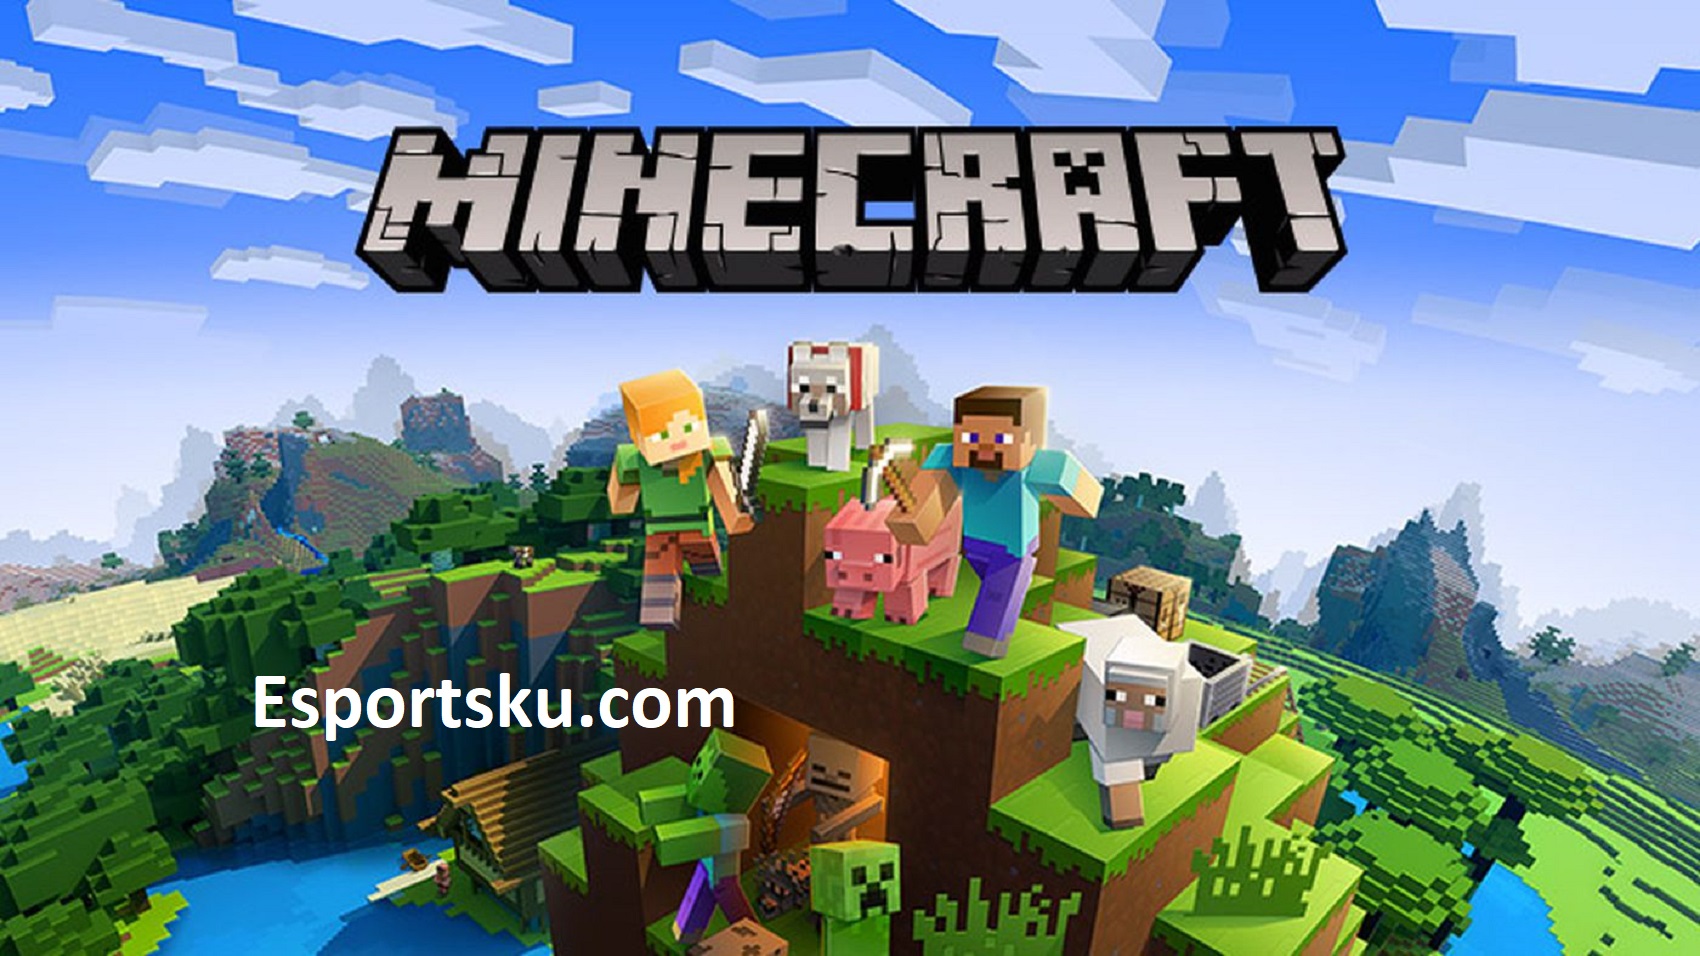 Apakah Minecraft termasuk Esports?